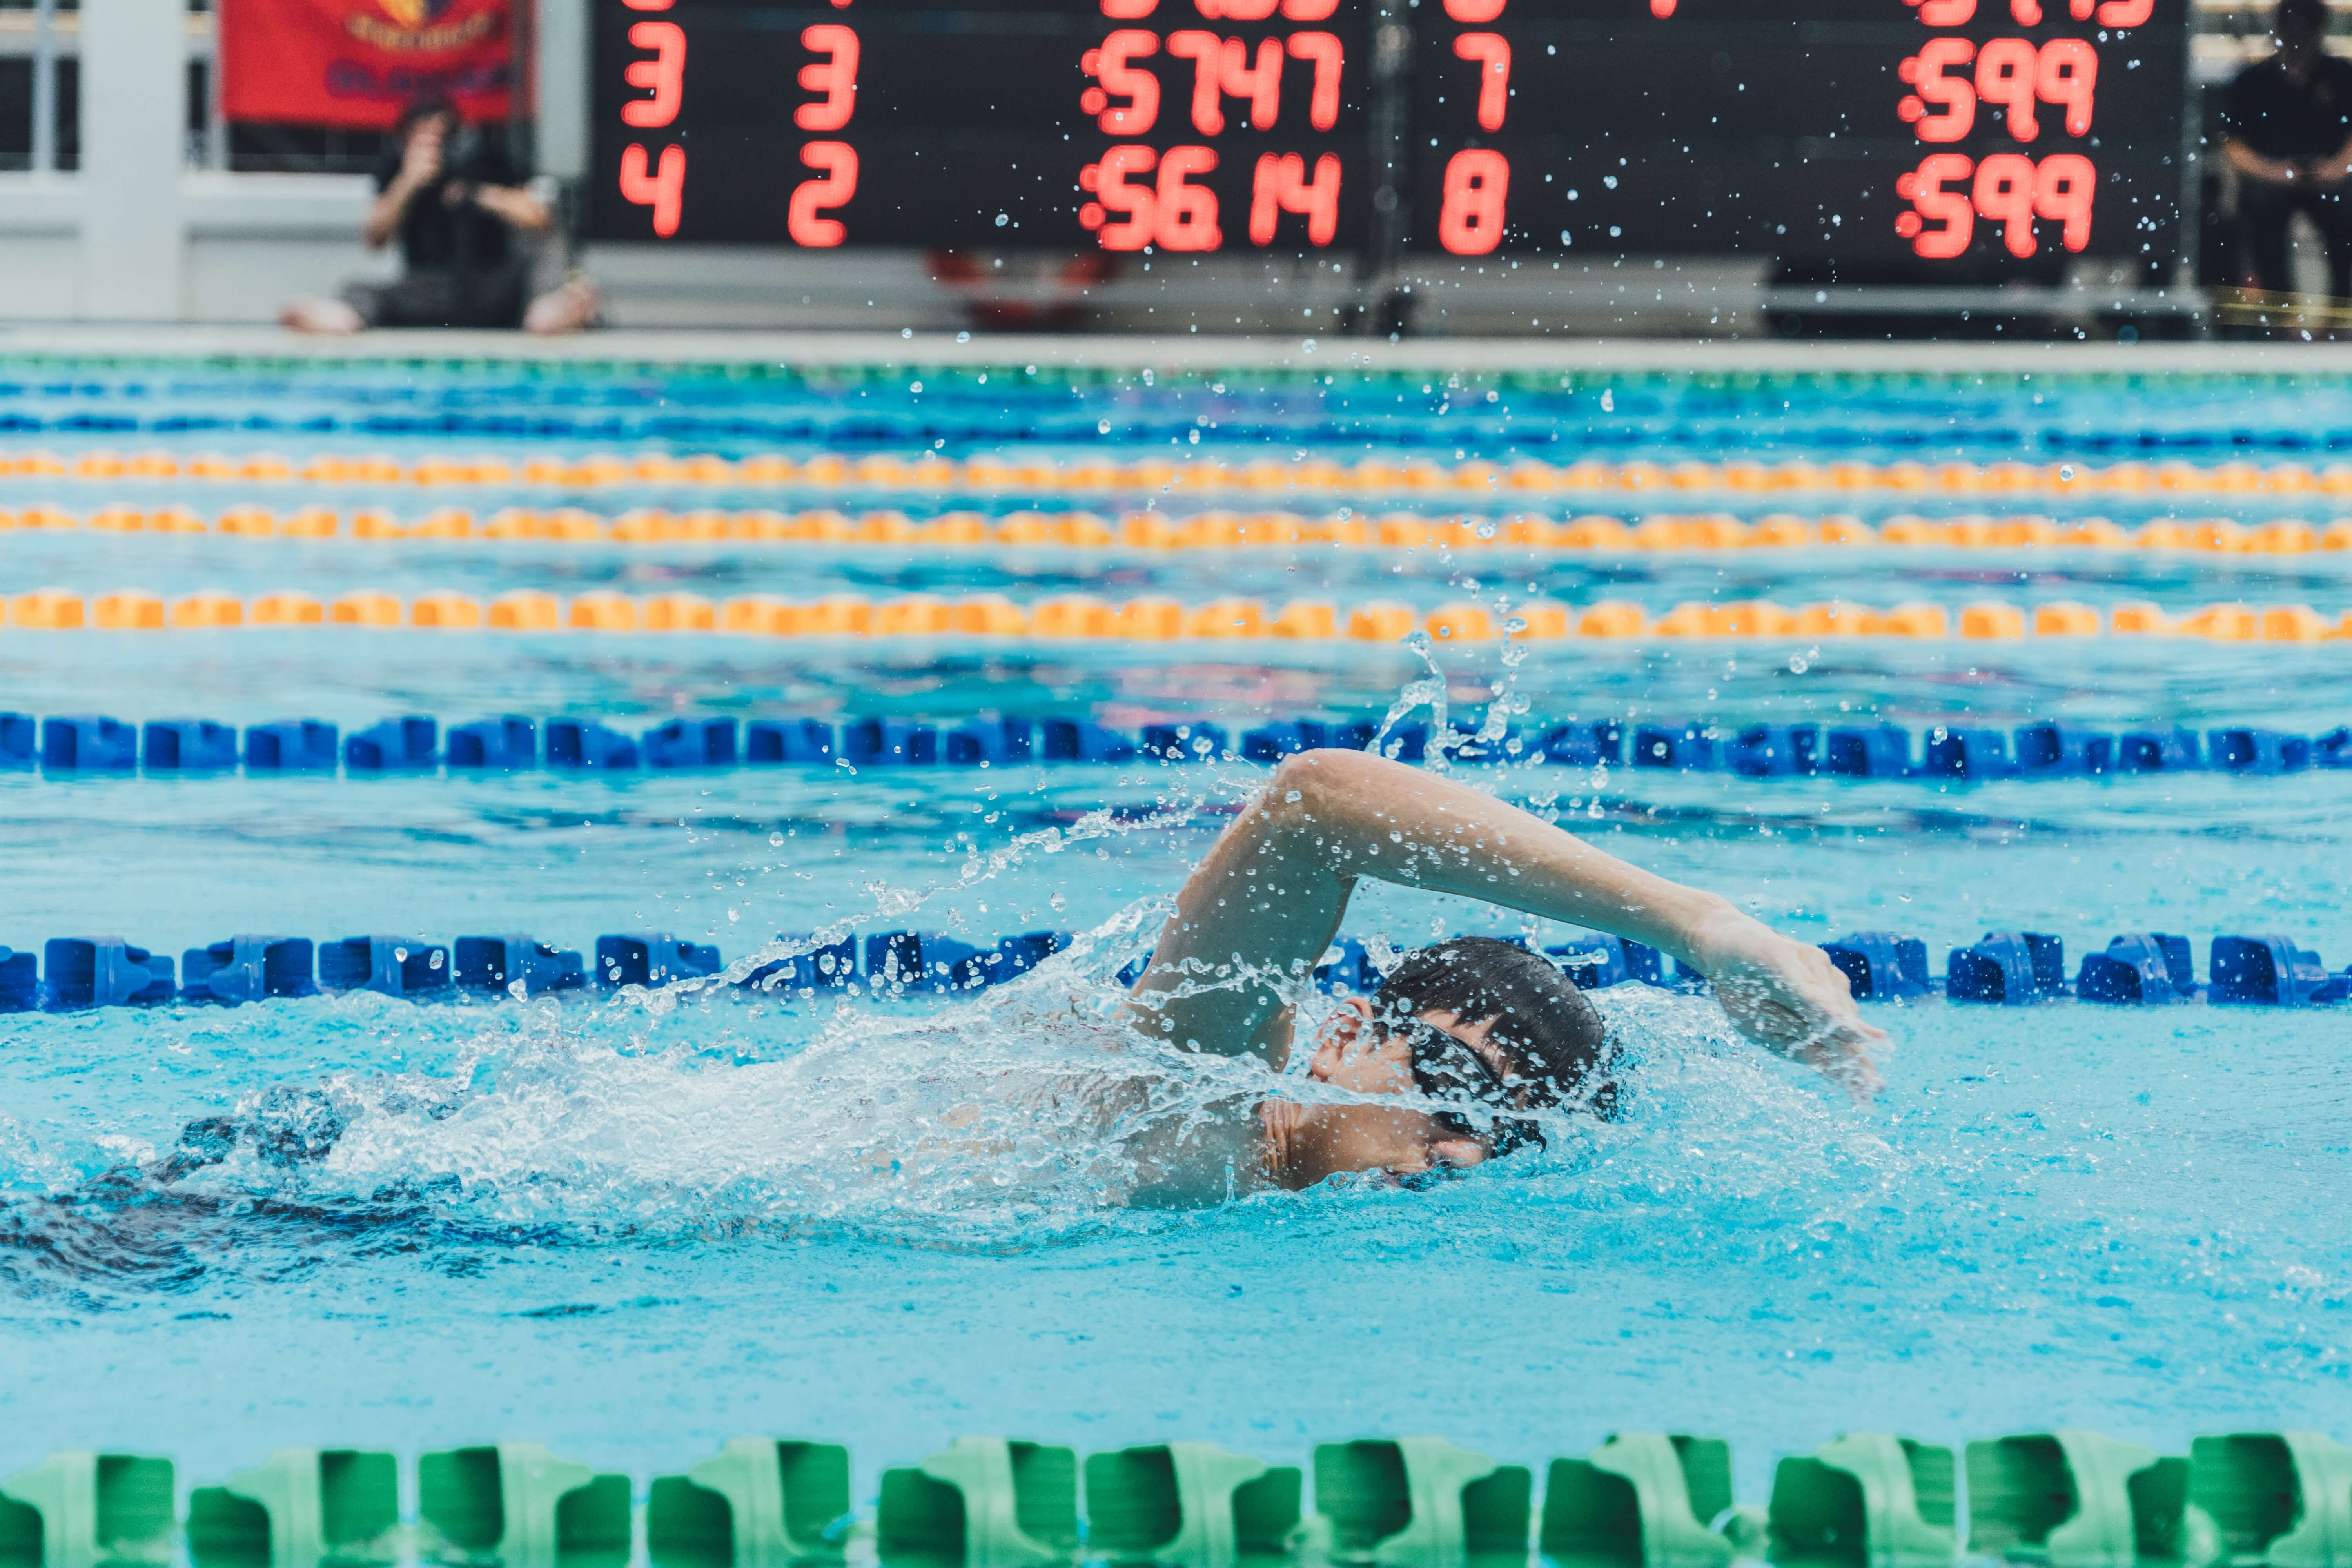 2018 FINA World Swimming Championships (25 m)